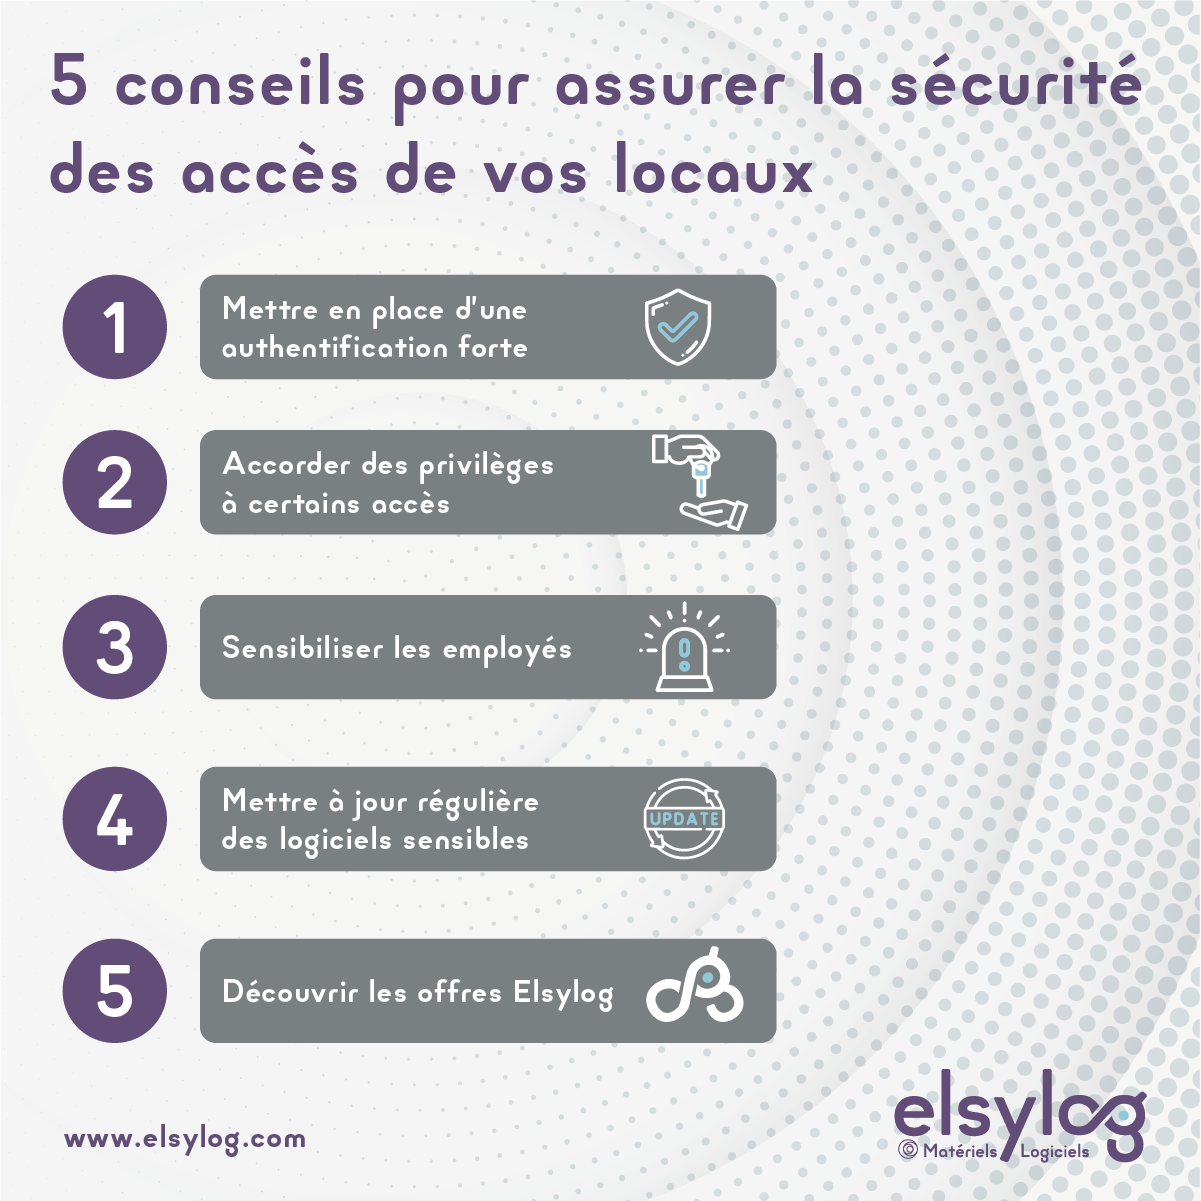 5 conseils pour assurer la sécurité des accès